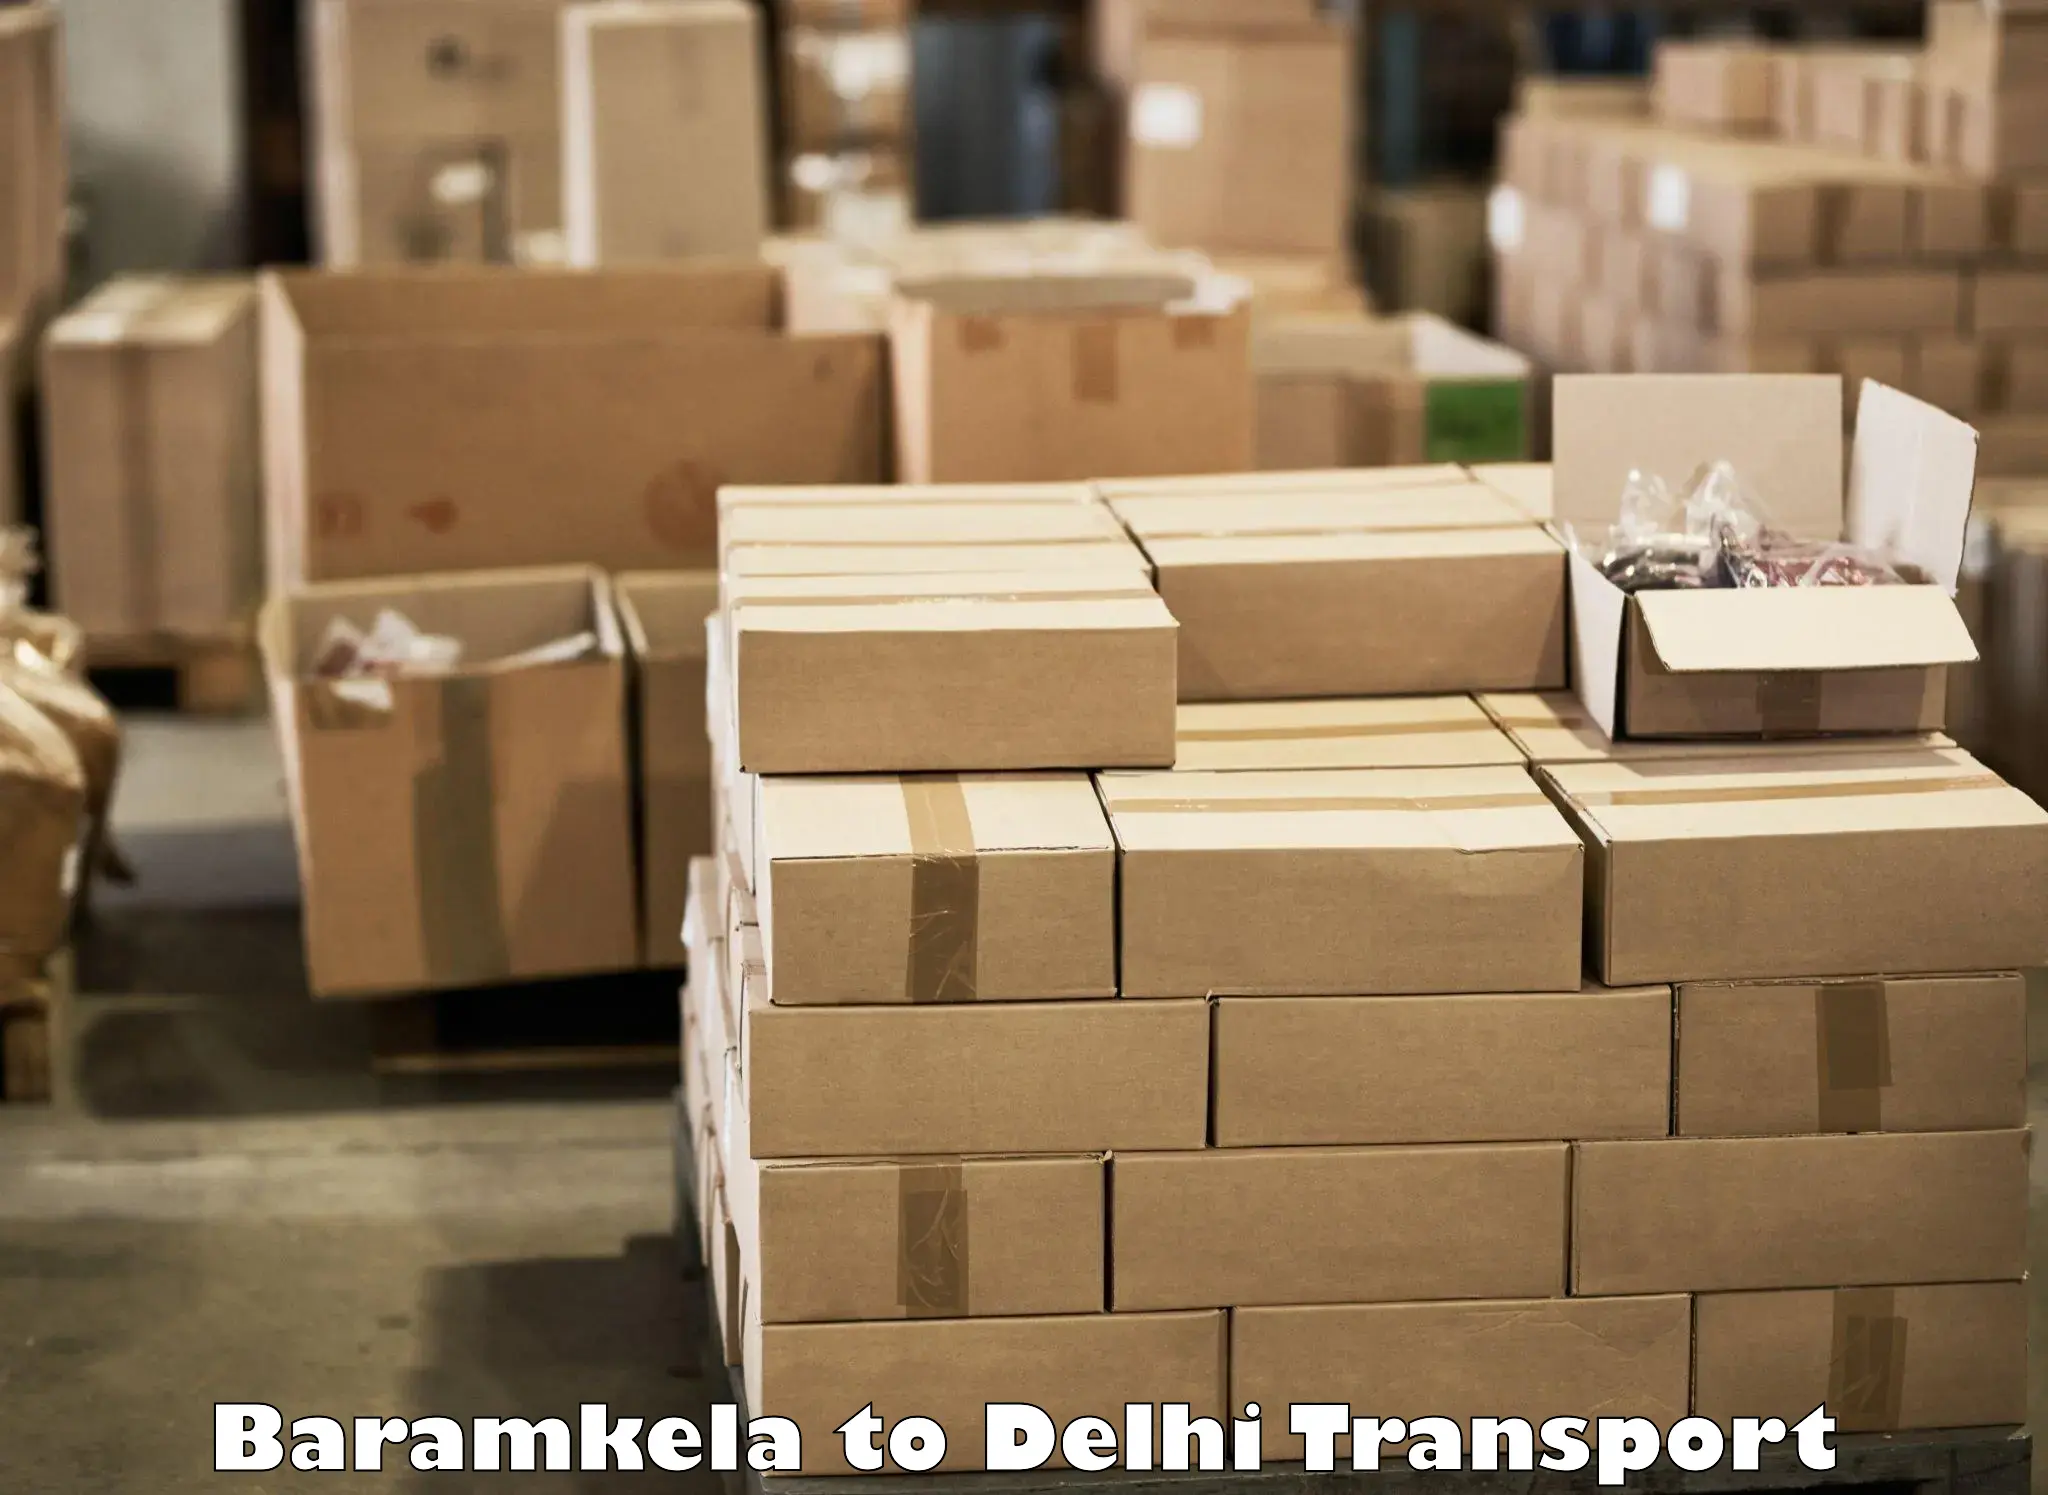 Nearby transport service Baramkela to Jamia Millia Islamia New Delhi